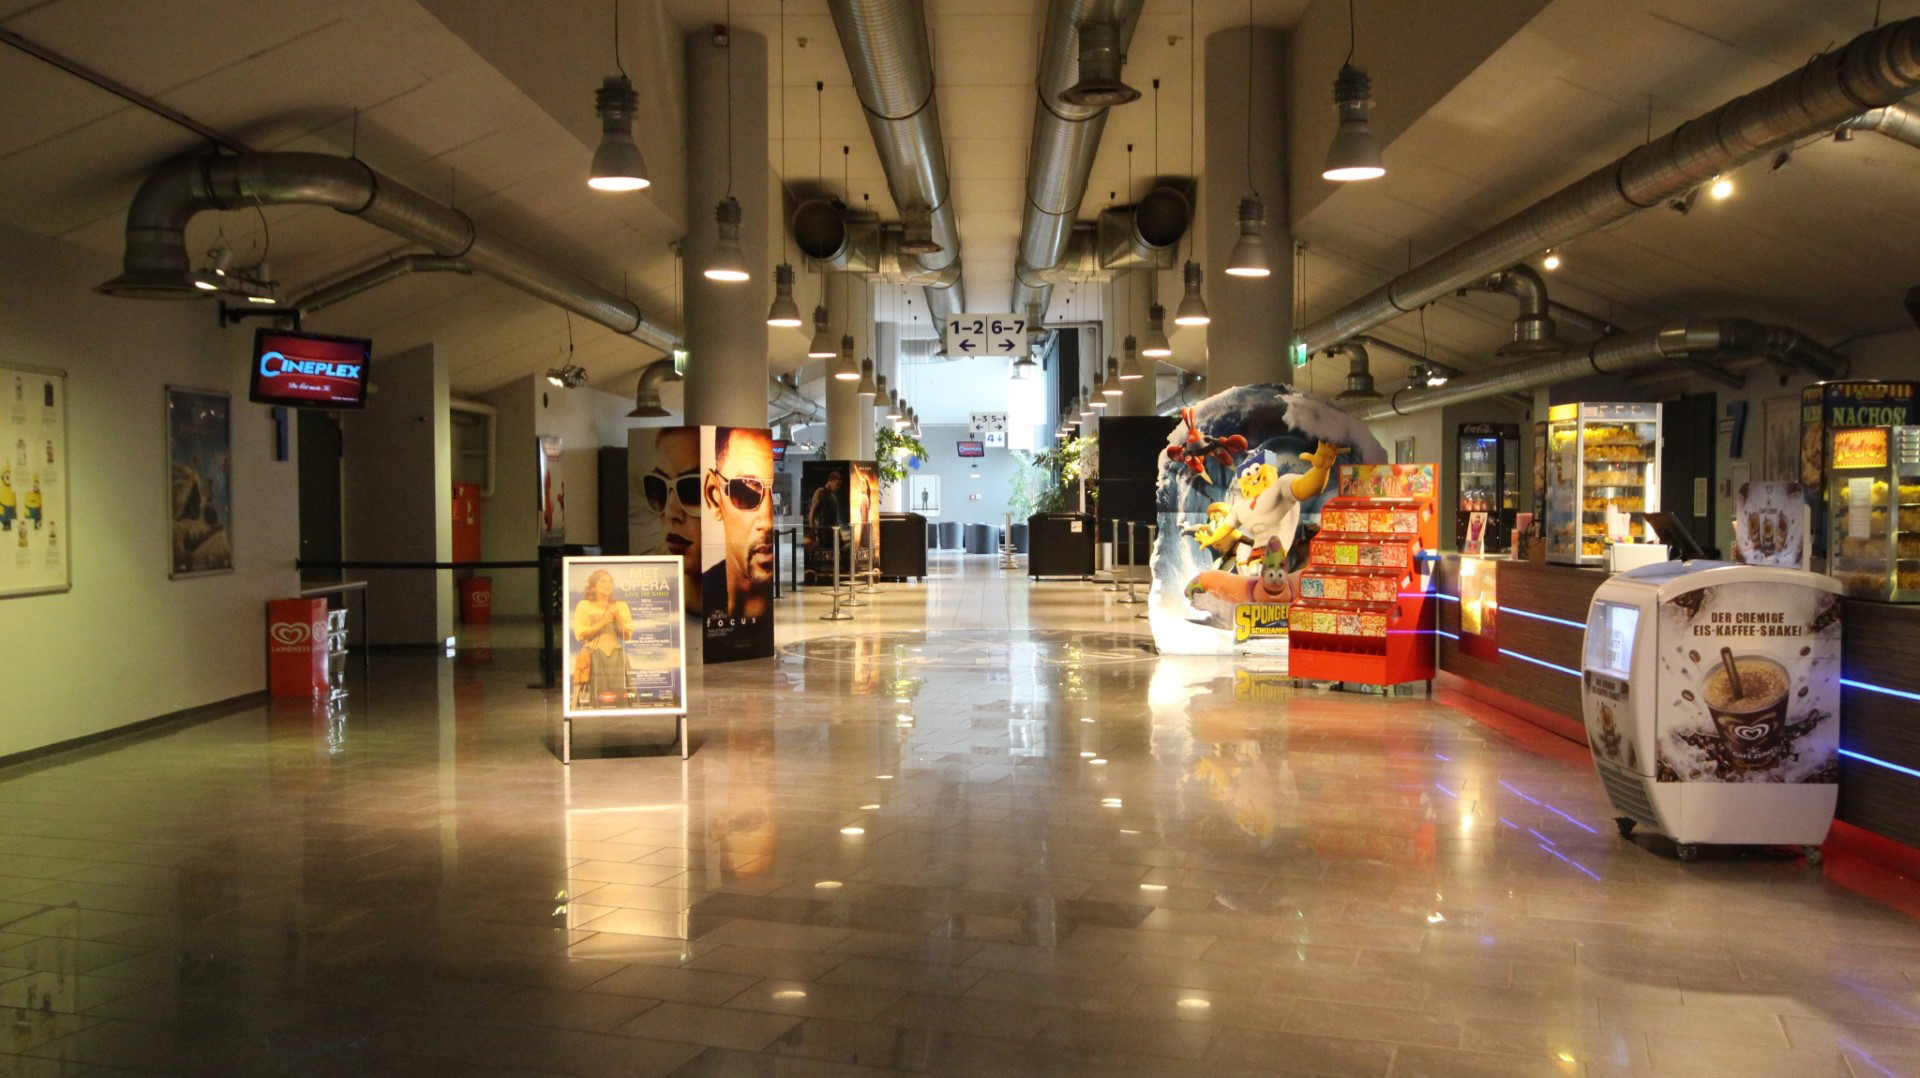 Das Bild zeigt das Foyer vom Cineplex Siegburg